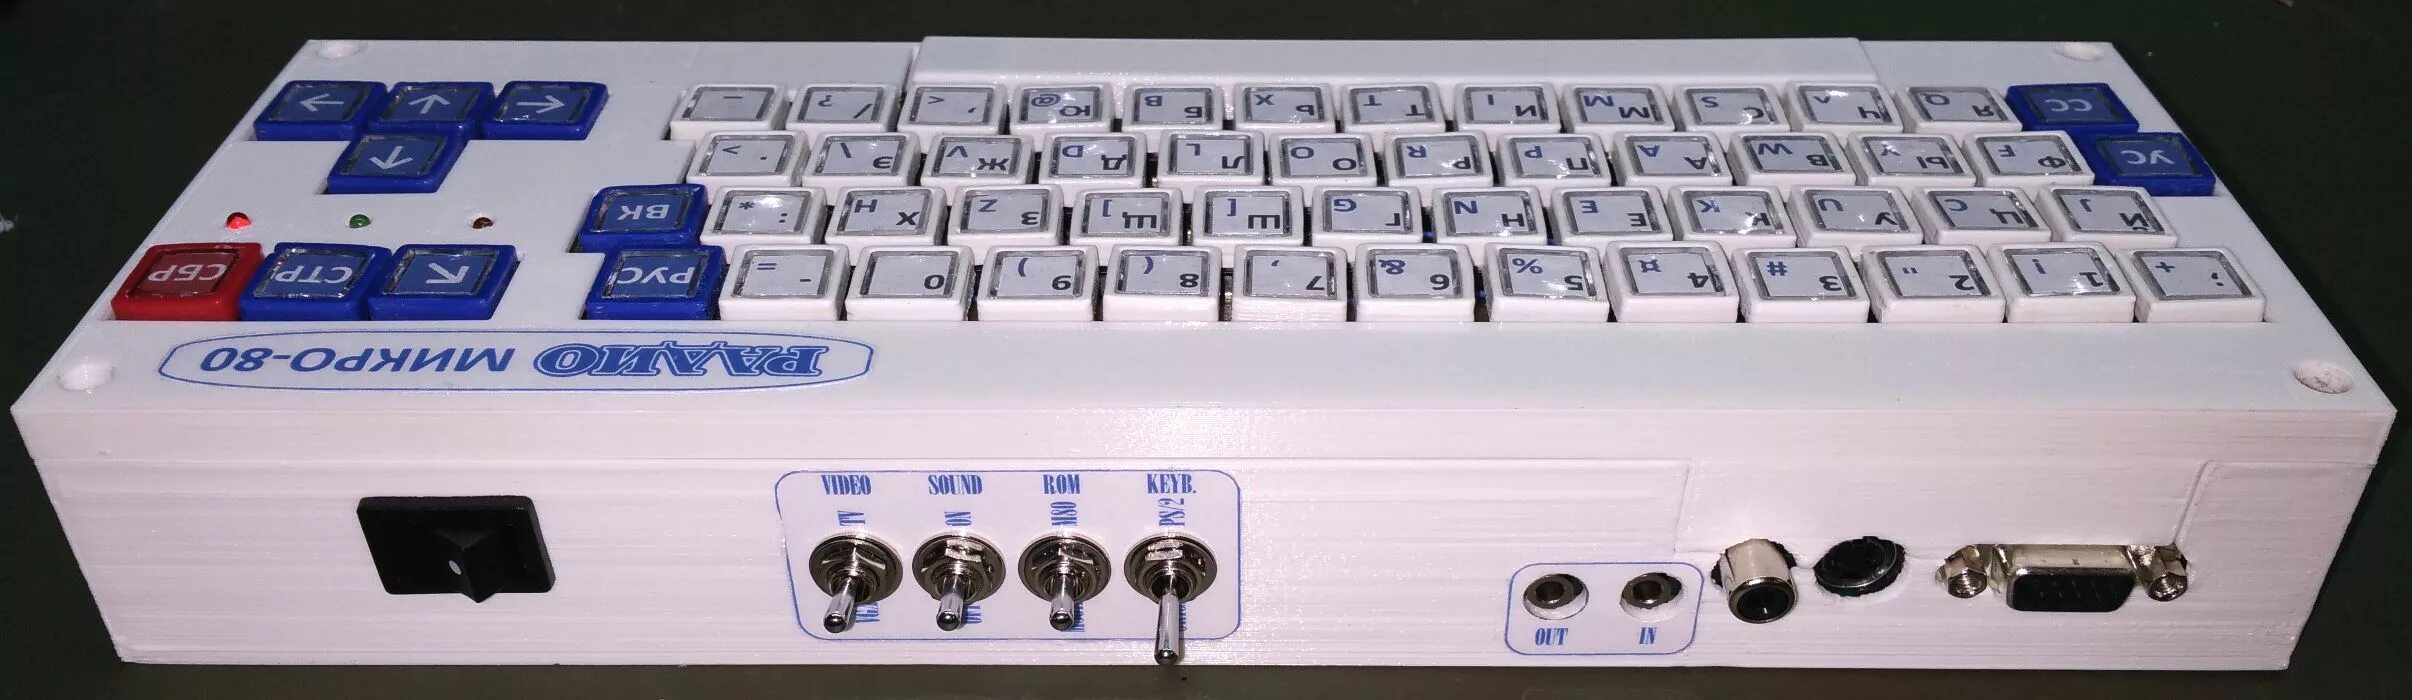 Микро 80. ПК "микро-80".. Микро 80 компьютер схема. Клавиатурный моноблок компьютер 80е. Весовой микрокомпьютер DG 8000.